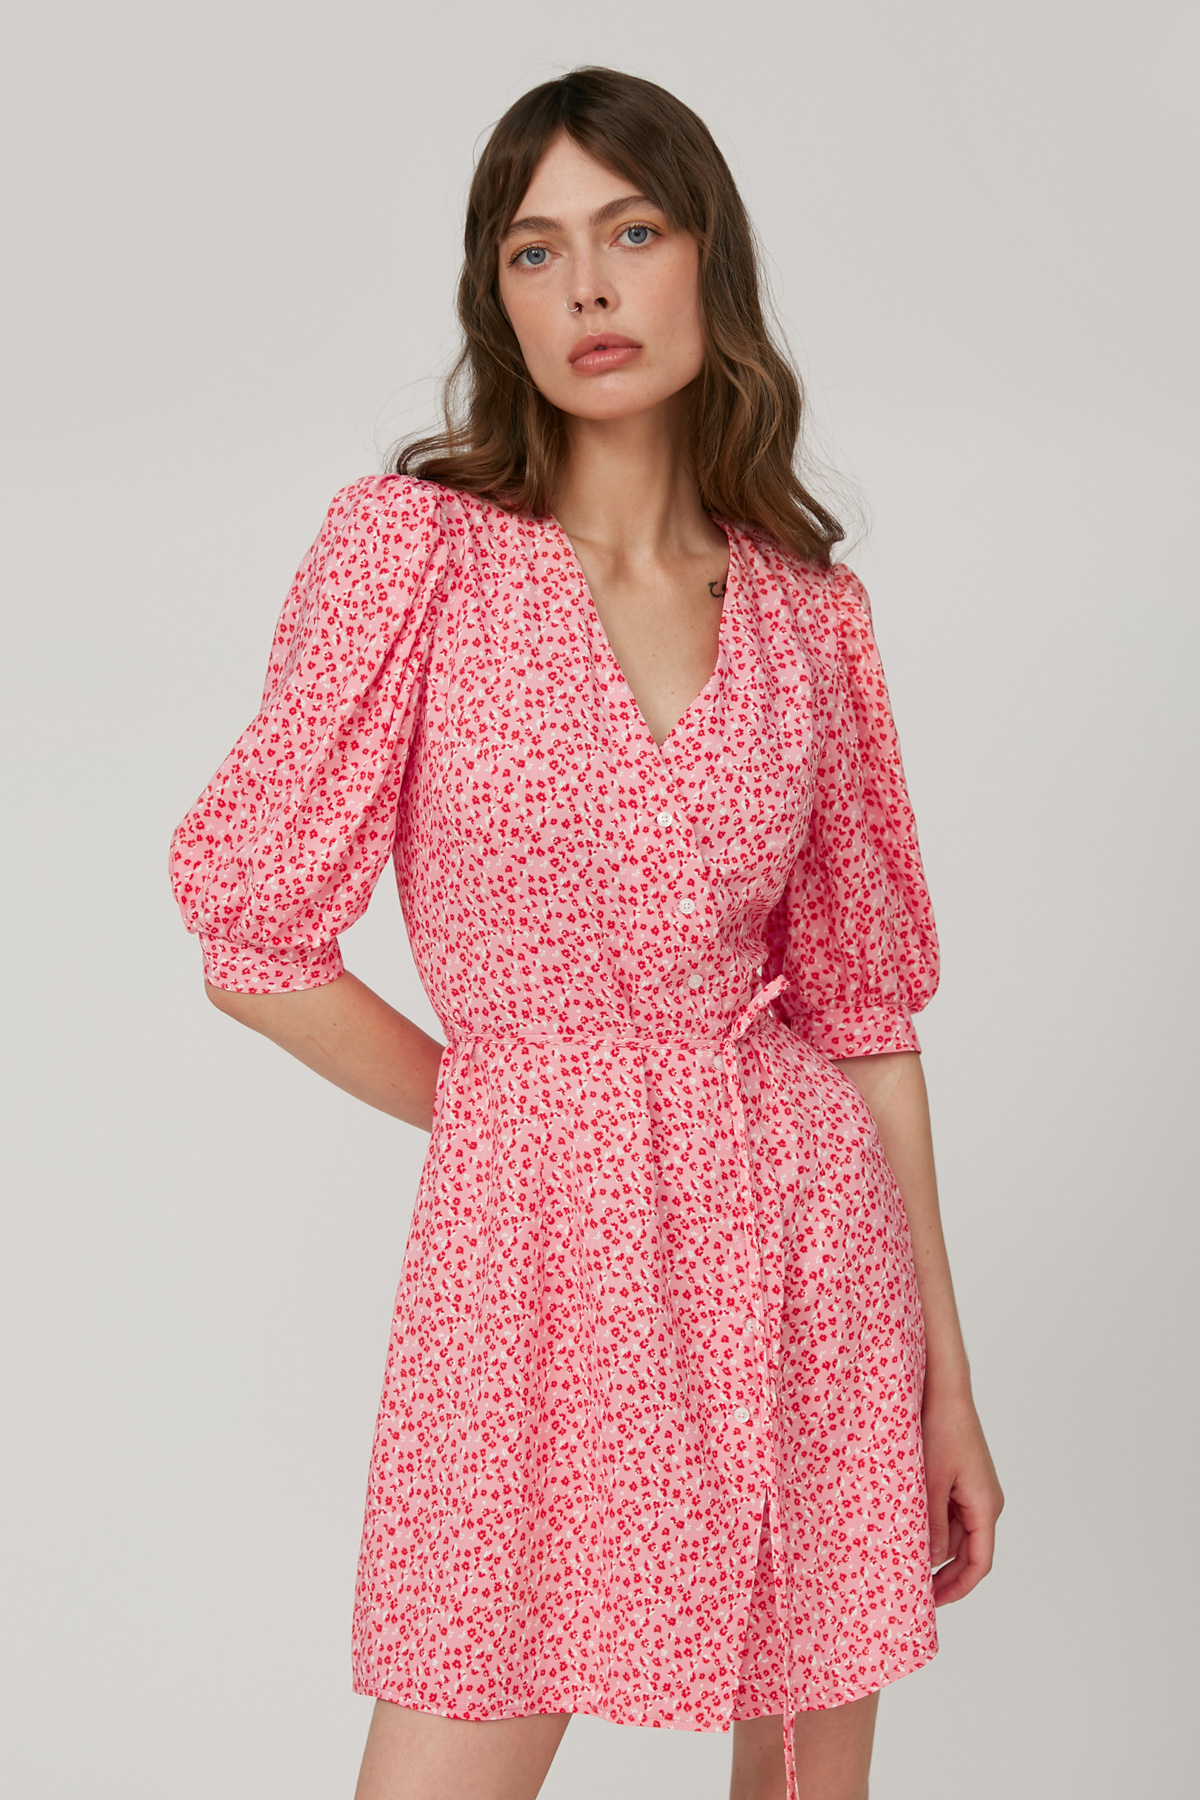 Короткое платье из вискозы розовое в цветочный принт, фото 2